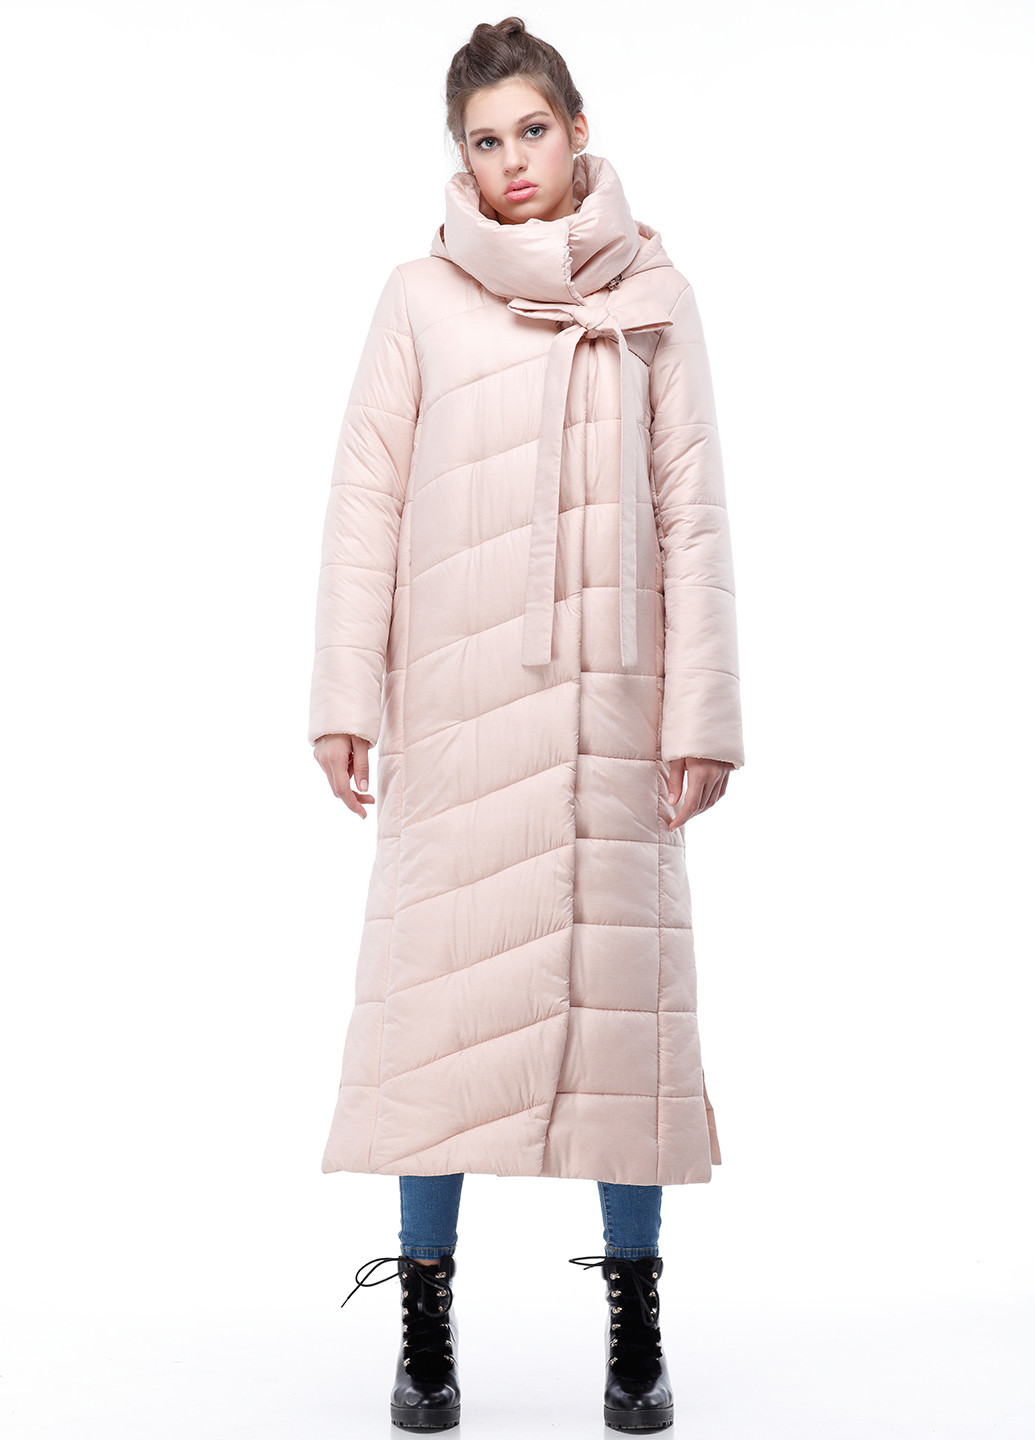 Светло-розовая зимняя куртка Origa Вероника удлиненная